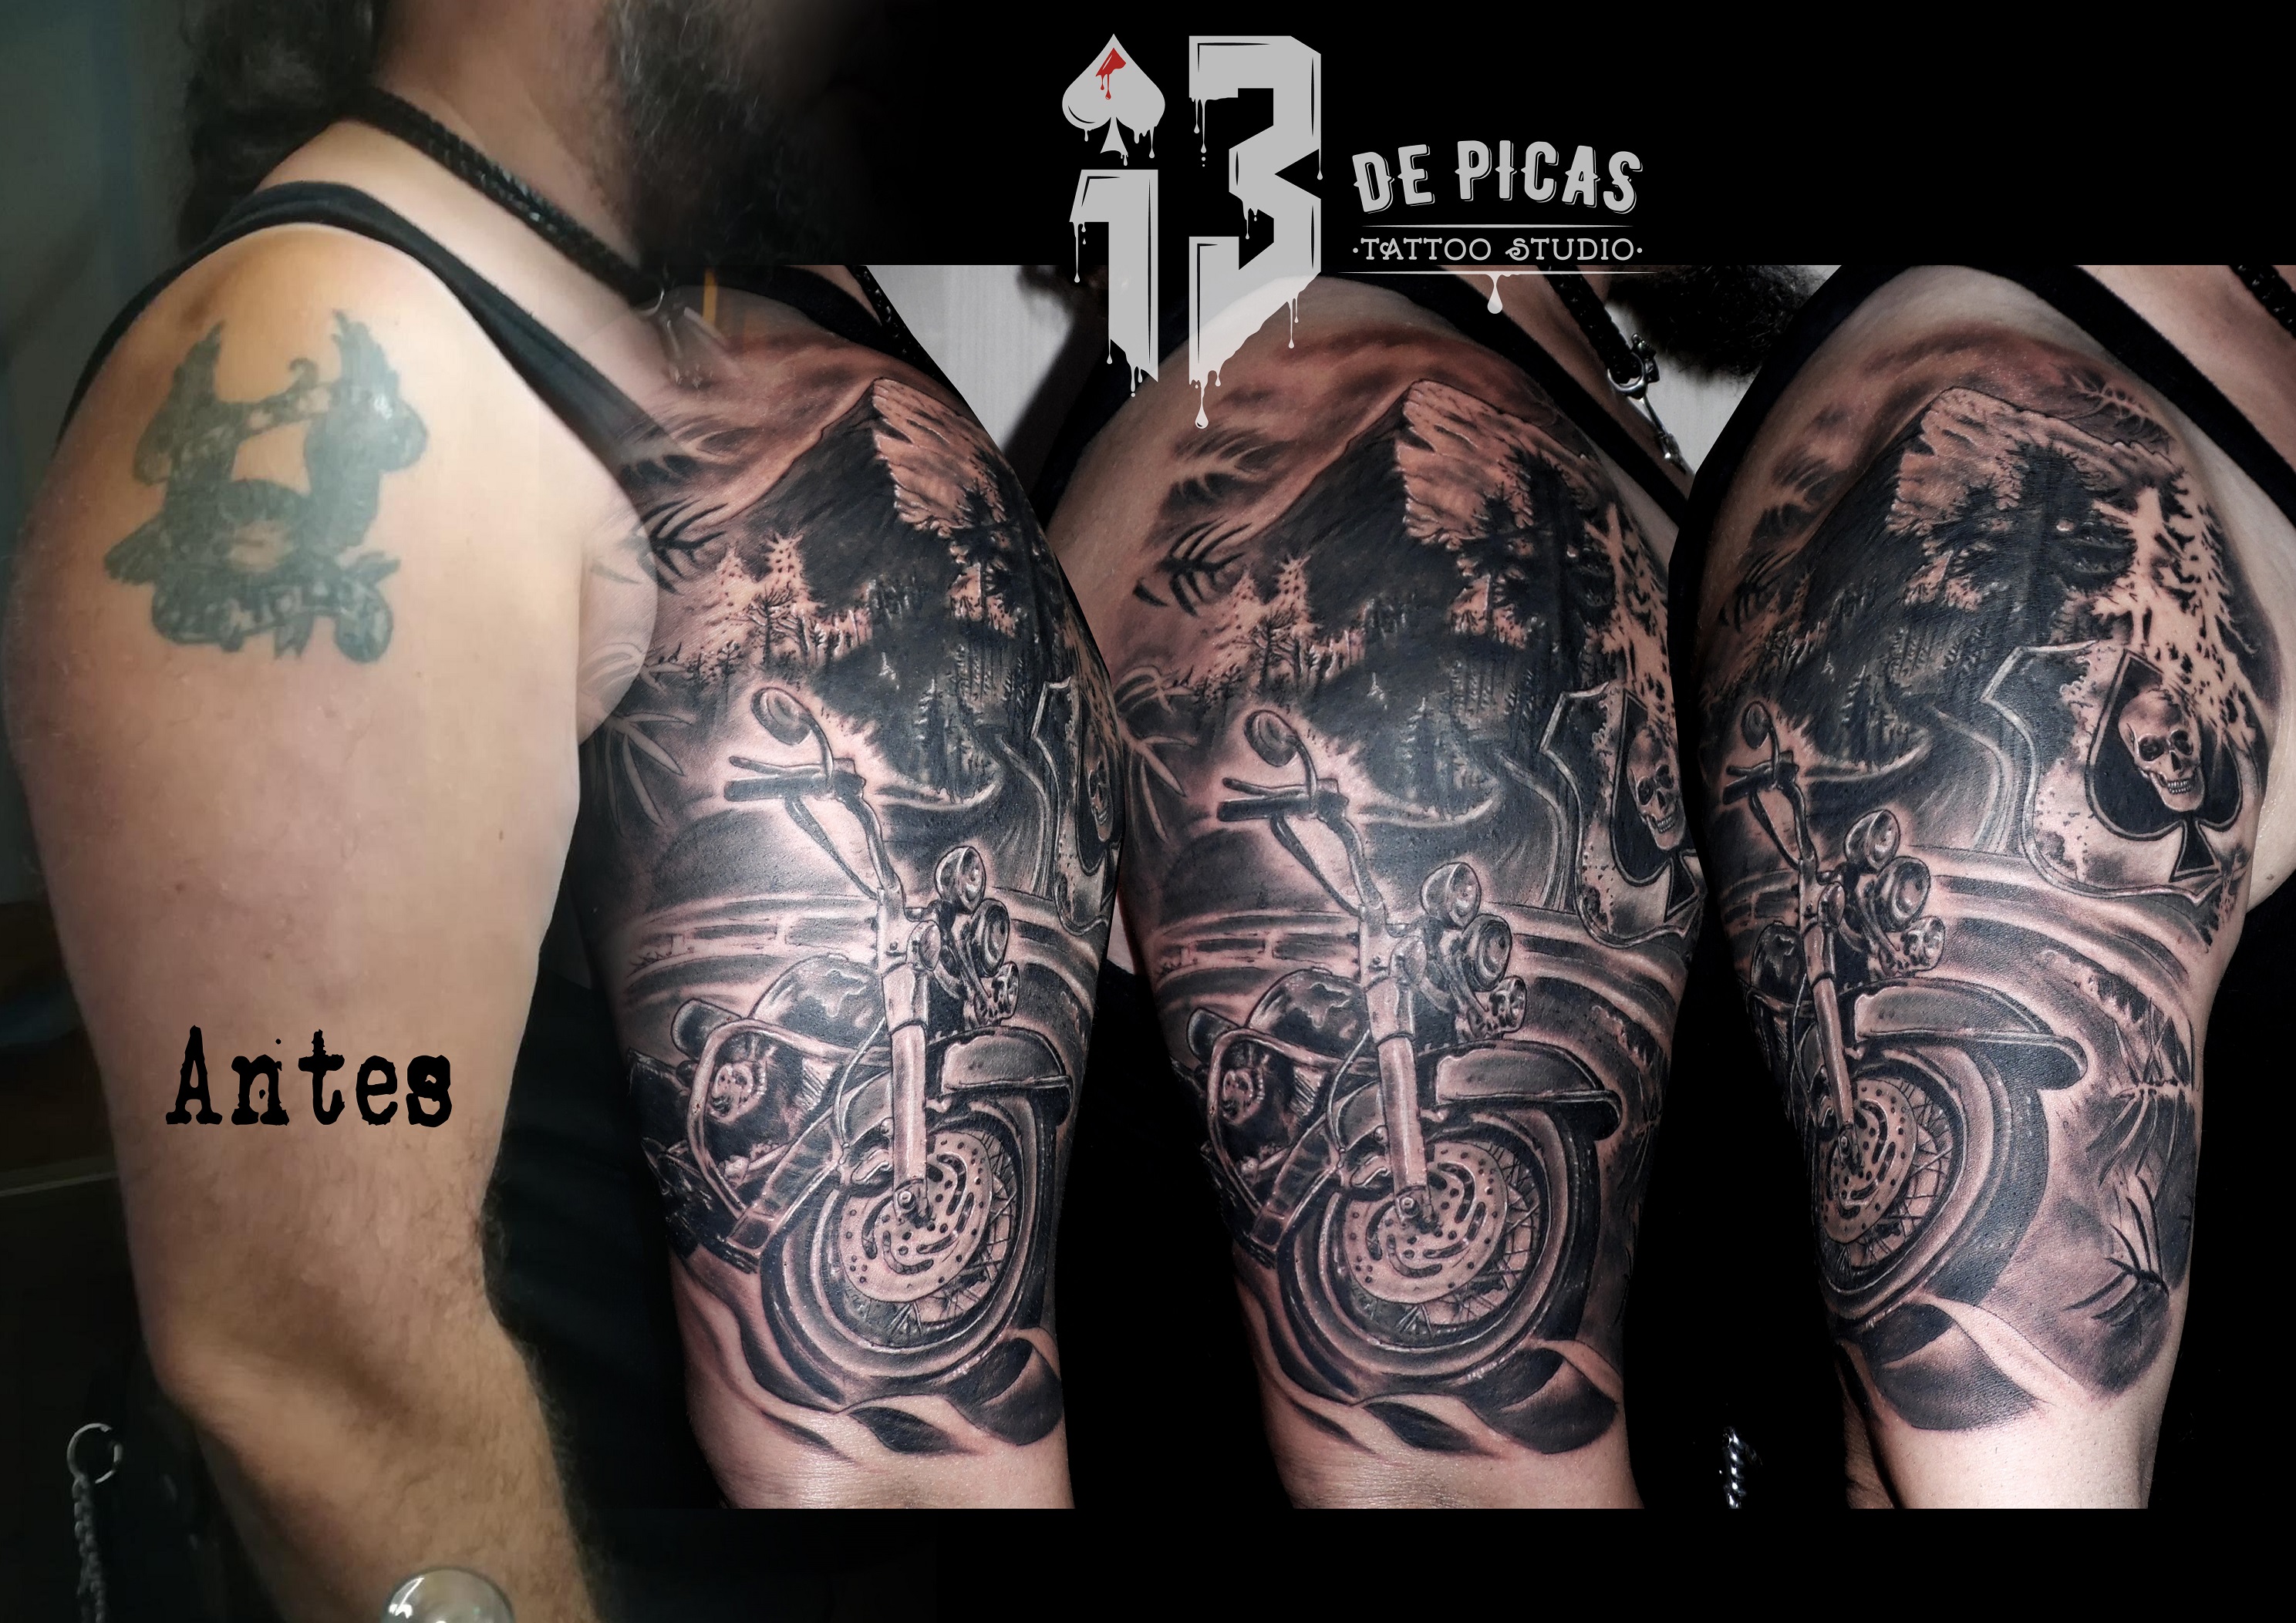 tatuaje tattoo moto biker paisaje montaña carretera pica calavera cover up tapado hombro brazo realismo black grey 13depicas jaca huesca